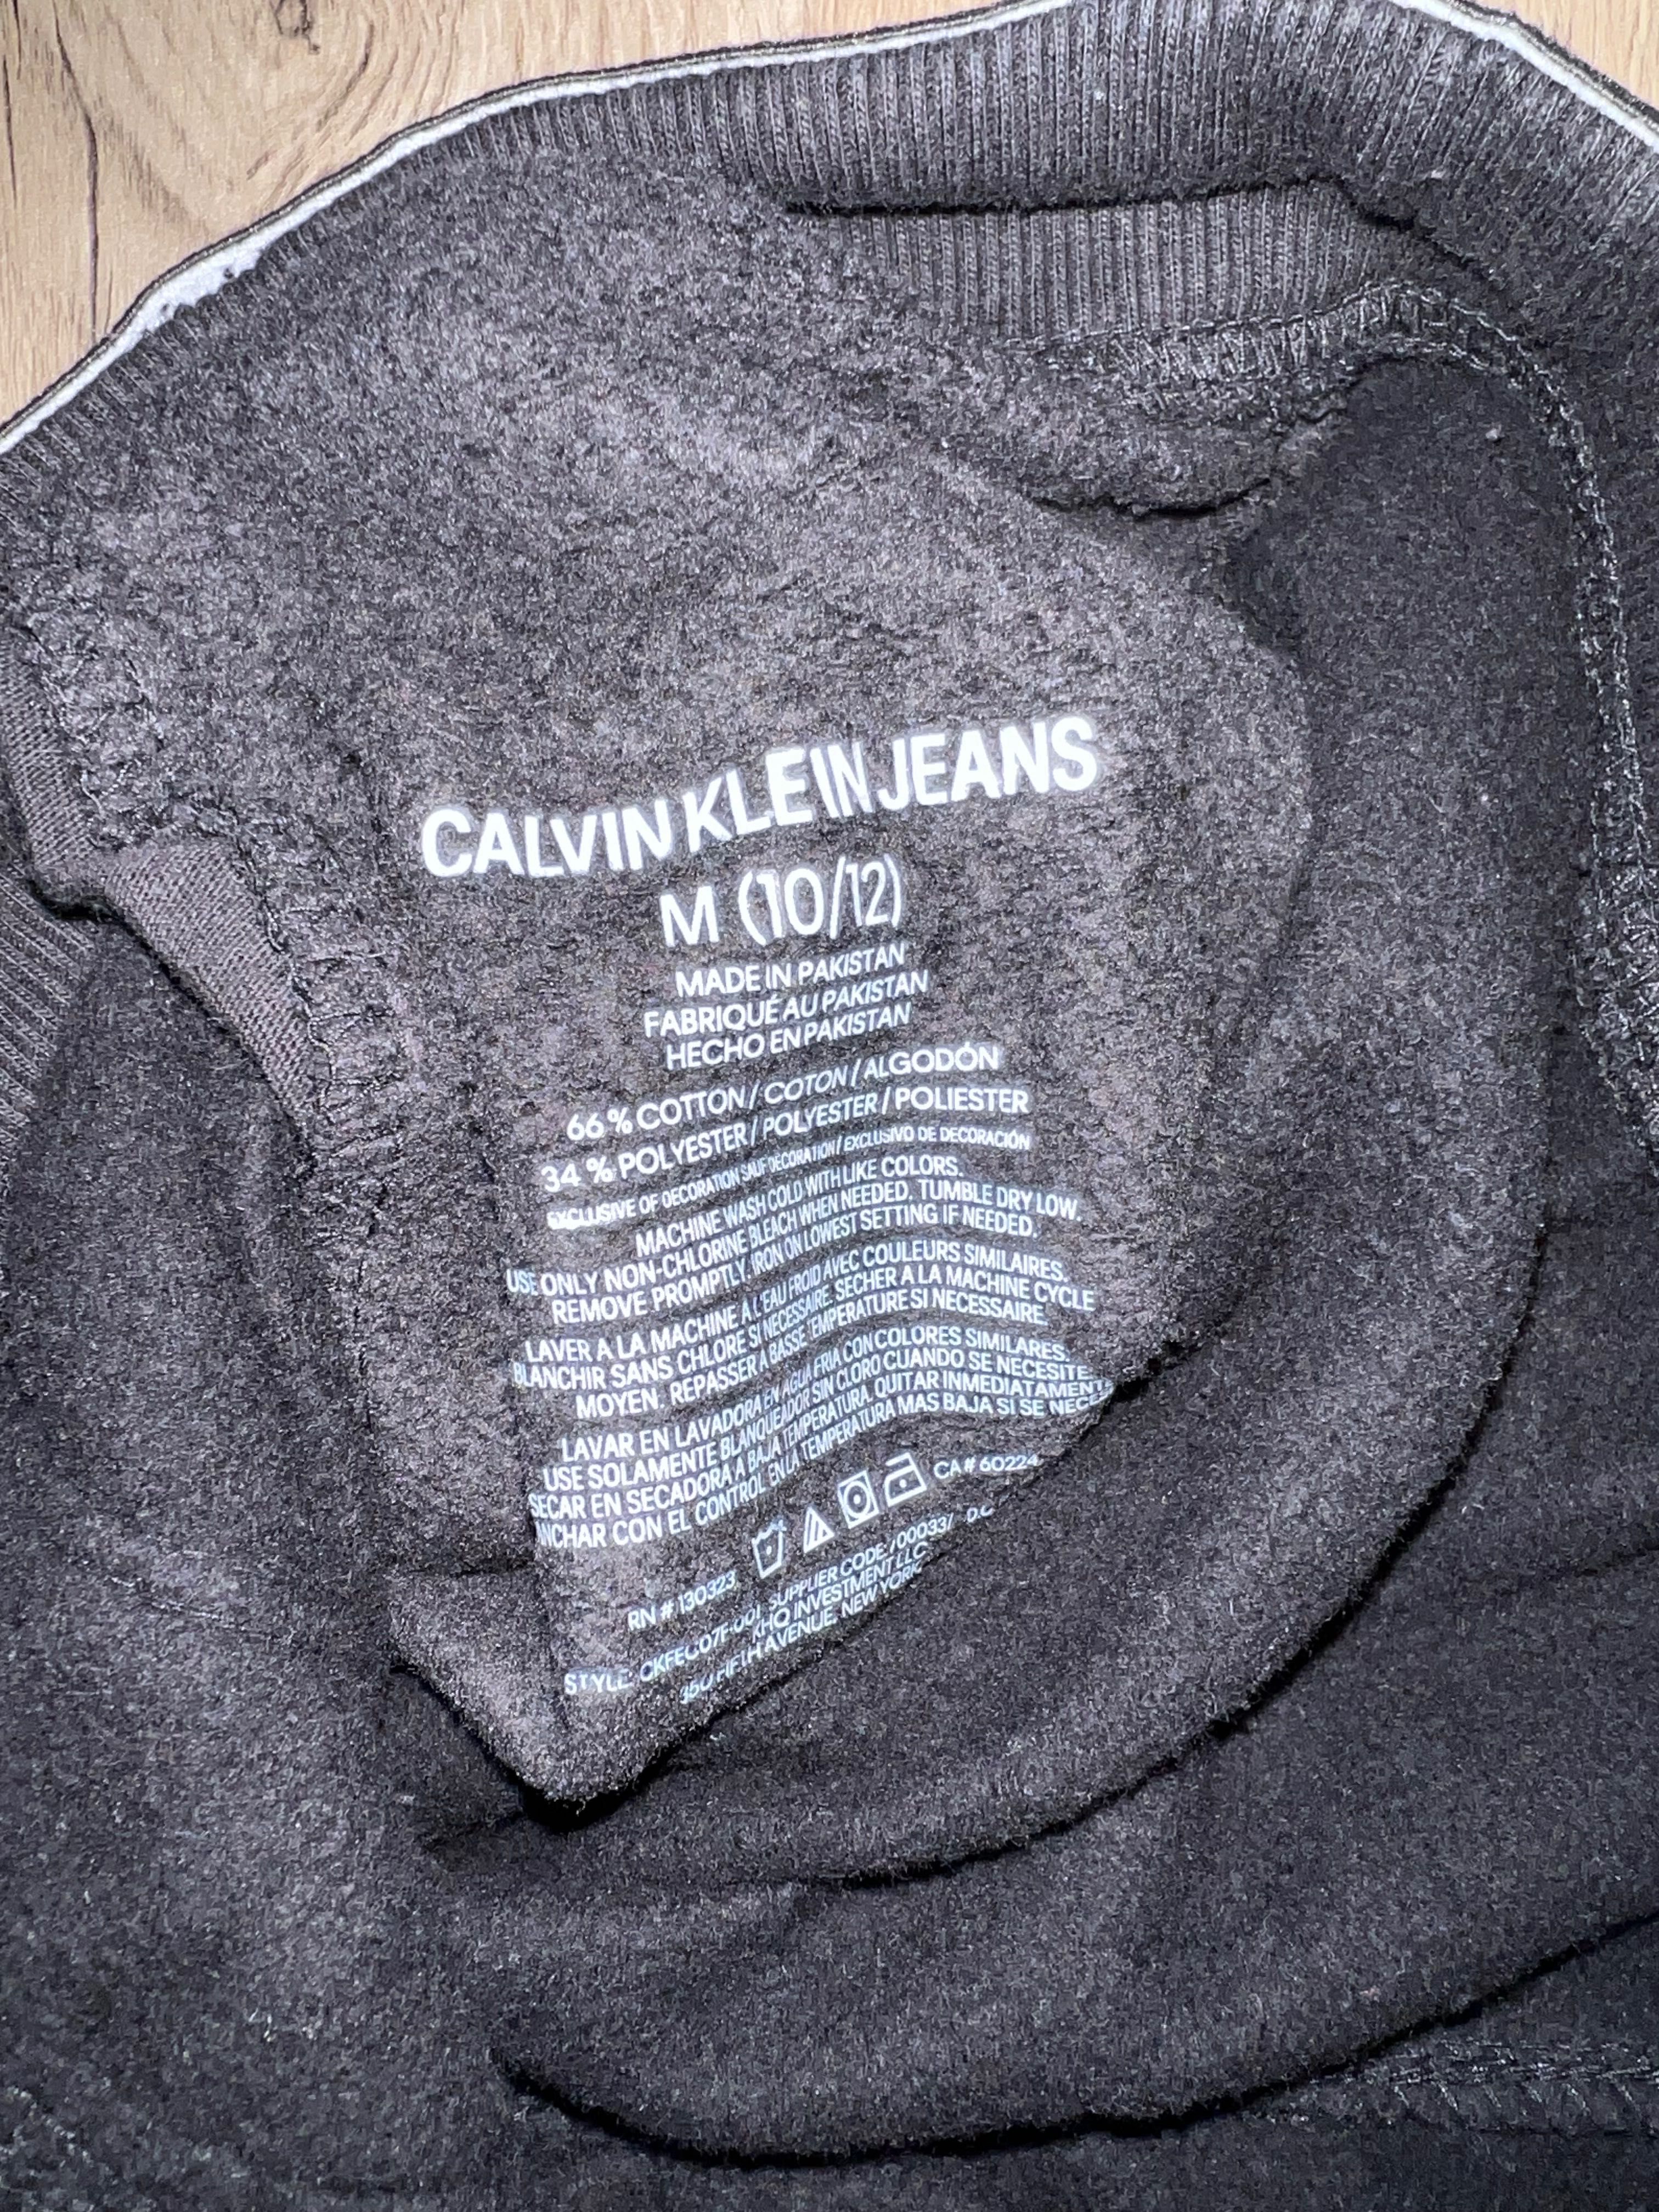 Дитячі спортивні штани Calvin Klein M (10/12) оригінал